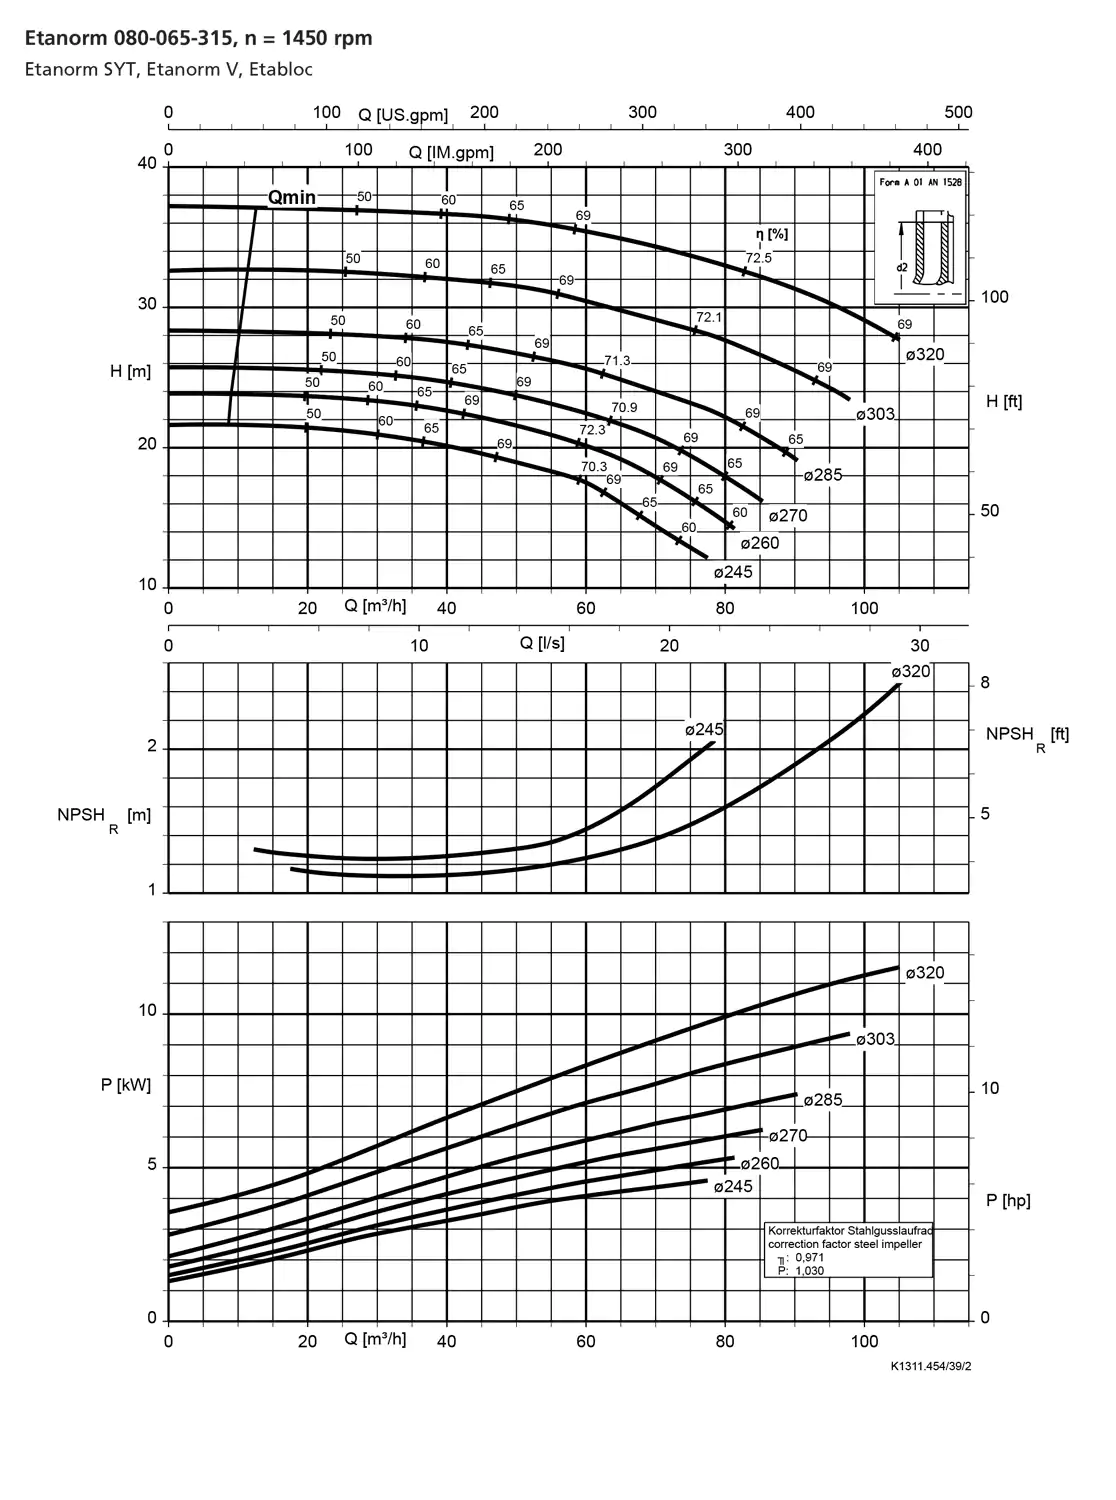 نمودار-کارکرد-پمپ-etanorm-80-065-315-1450